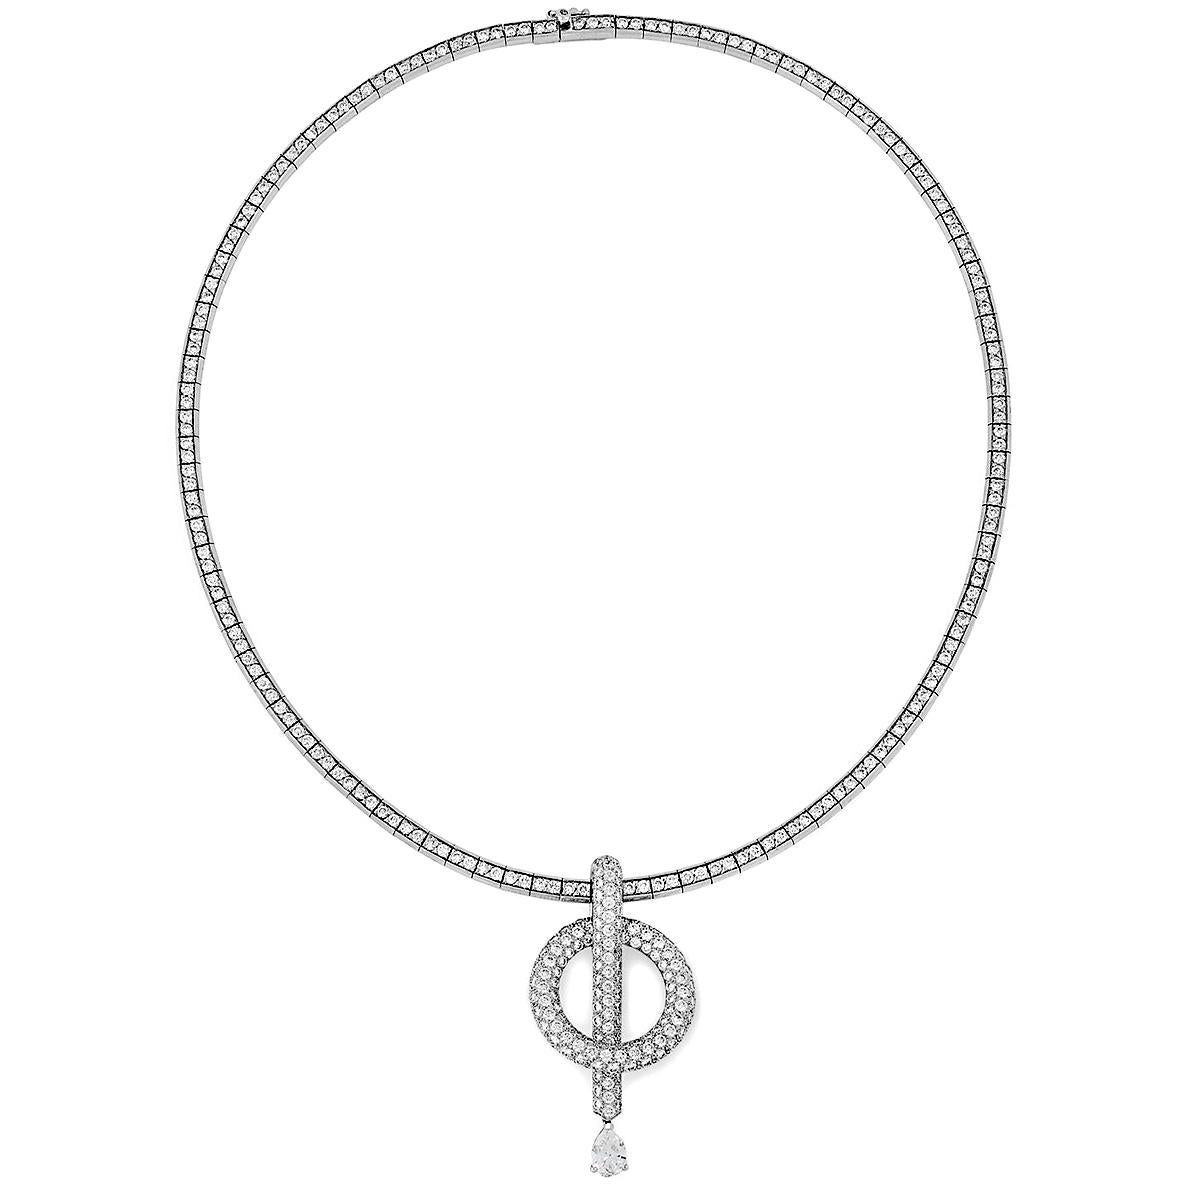 Un fabuleux collier pendentif de haute joaillerie Chanel présentant un collier Chanel en or blanc orné des plus beaux diamants ronds taille brillant suspendant un pendentif détachable Chanel en diamant serti de 3 cts de diamants.